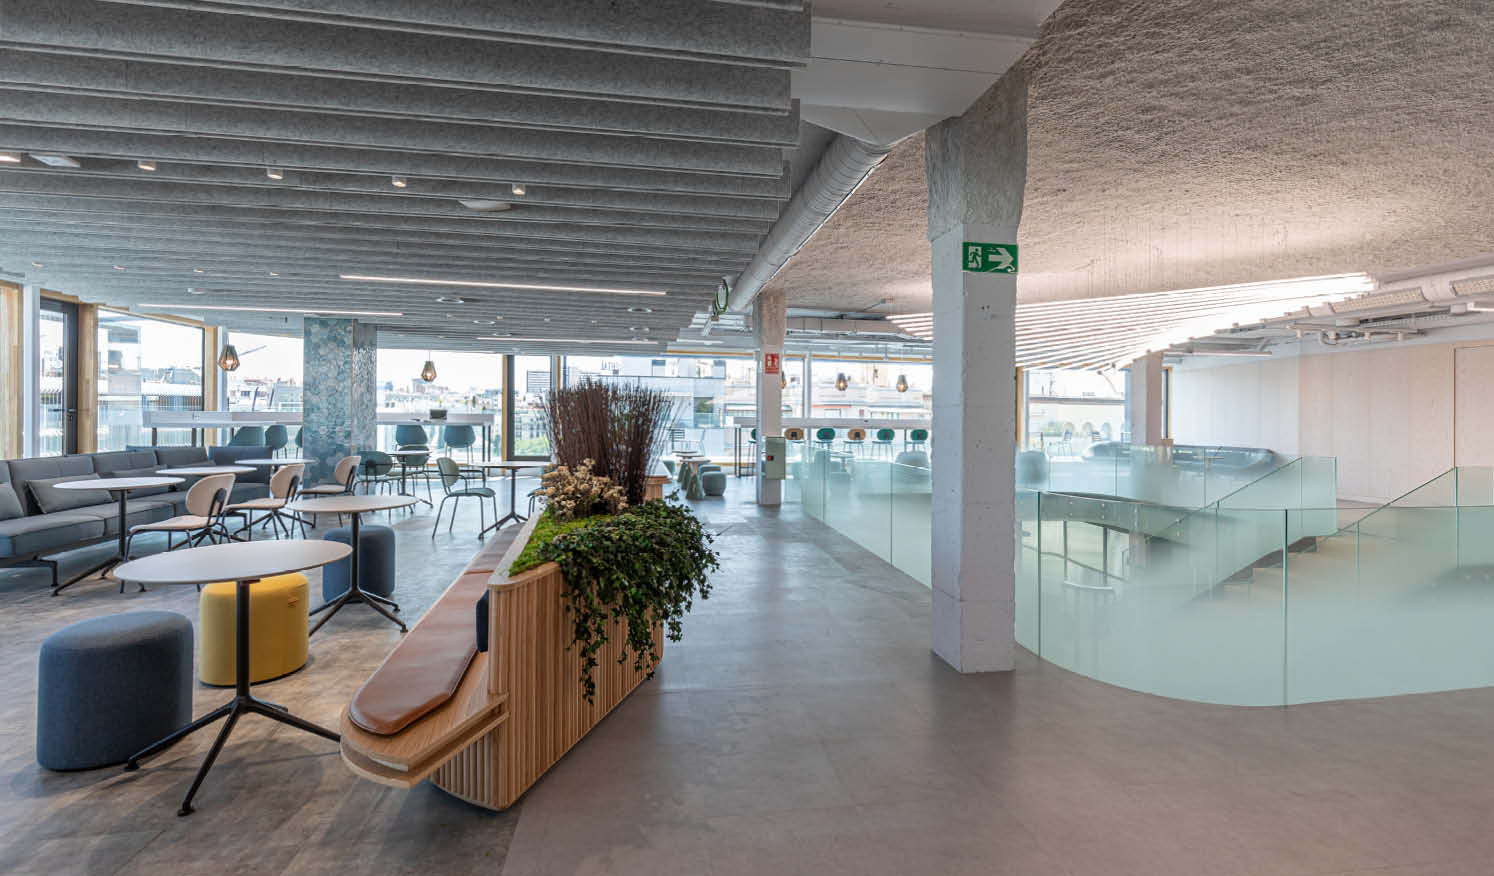 Edificio de Oficinas en Madrid: proyecto de mobiliario y carpintería a medida